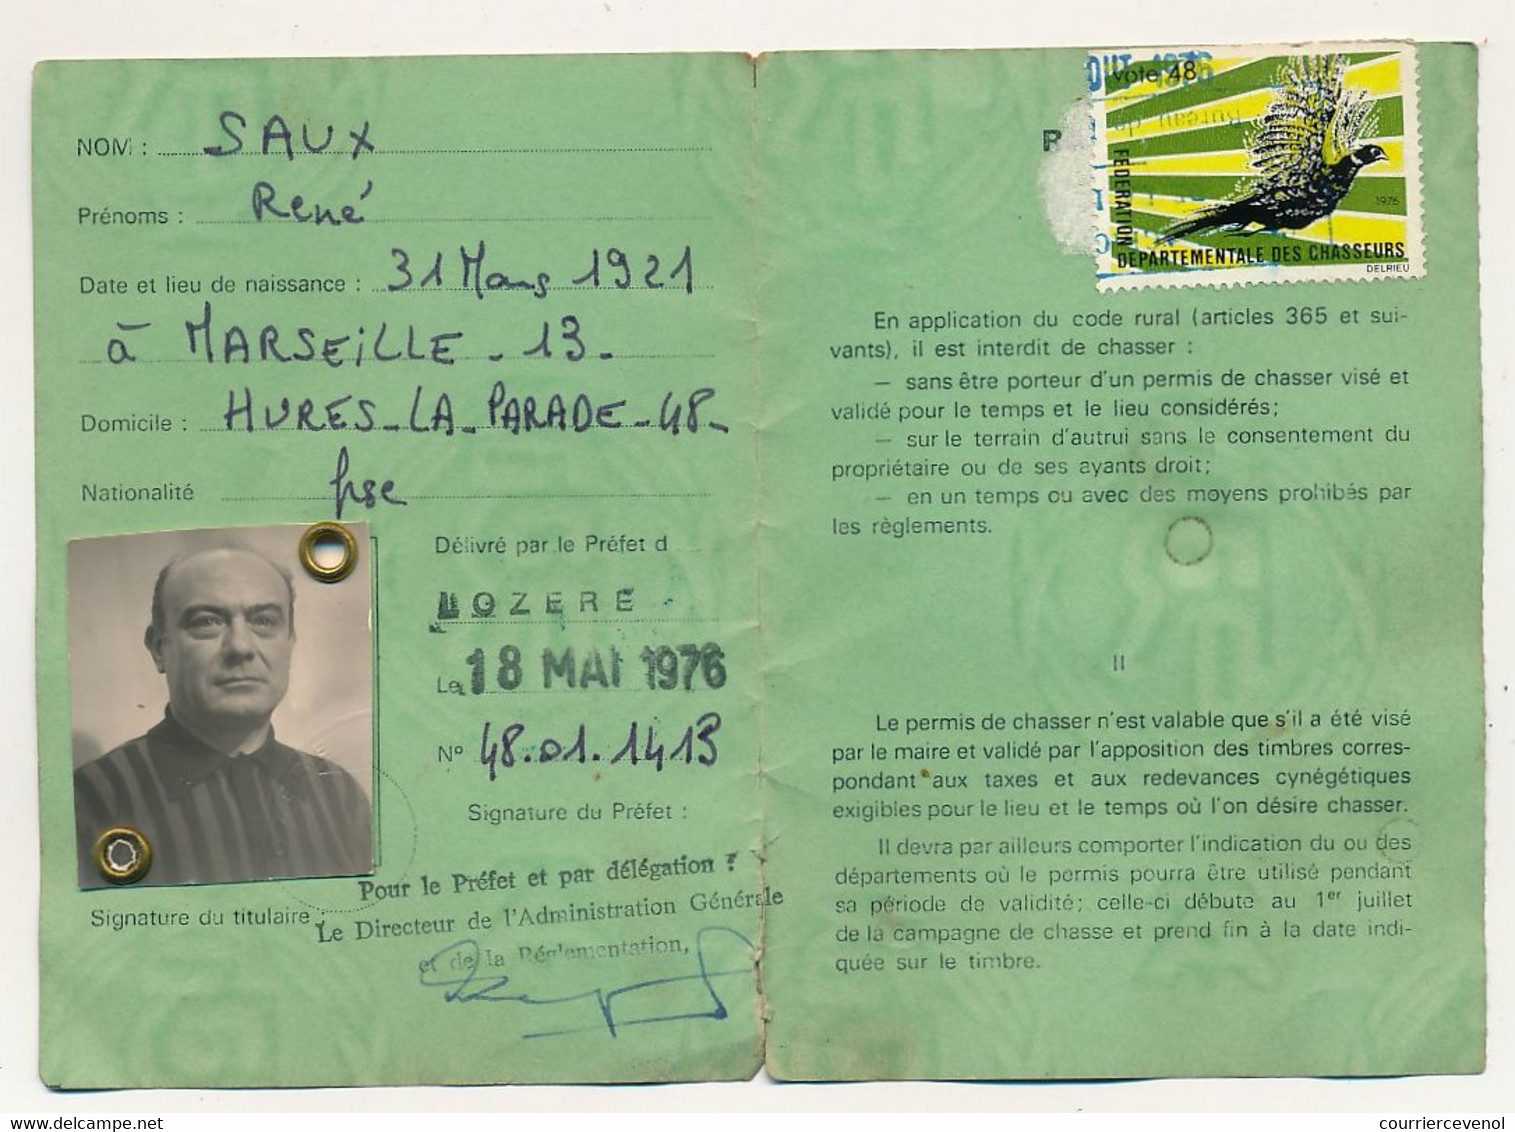 FRANCE - Permis de Chasser, Département de Lozère, 1976 + volet 1977/1978 - timbre fiscal départemental type Daussy